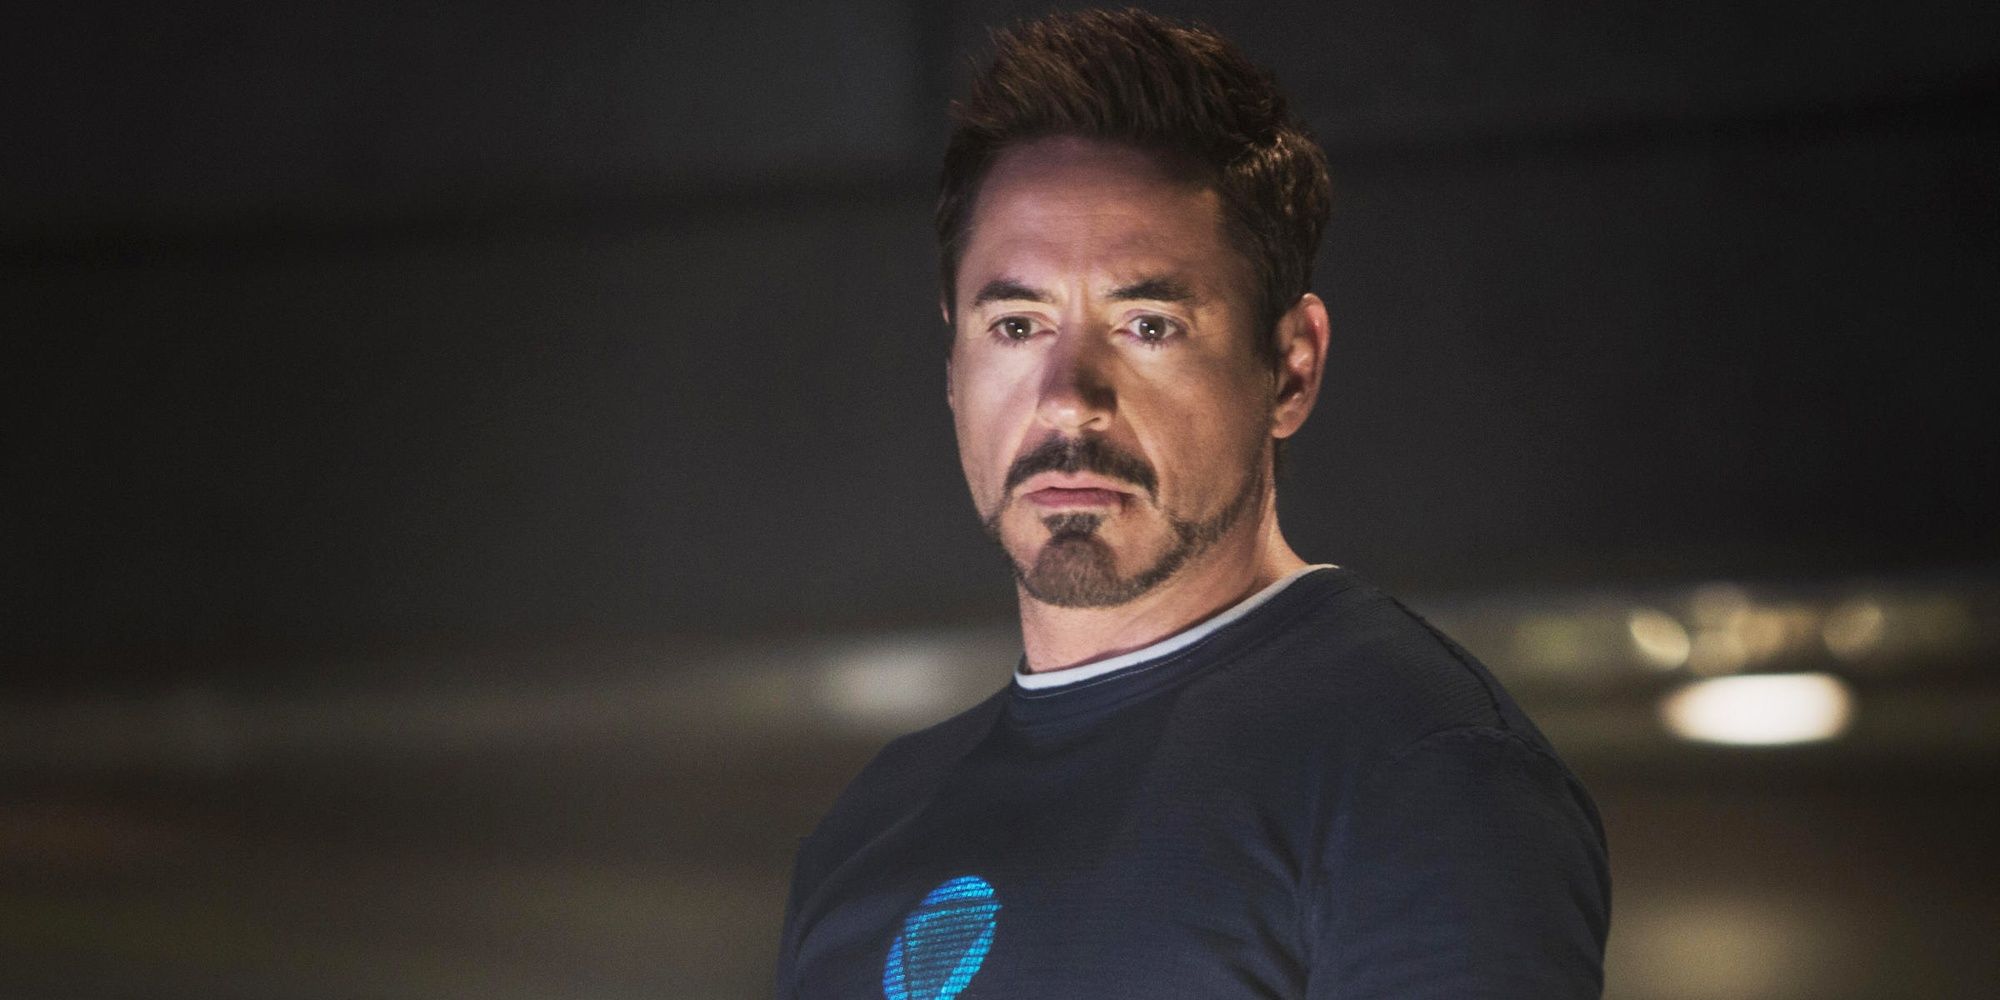 Robert Downey Junior as Tony Stark